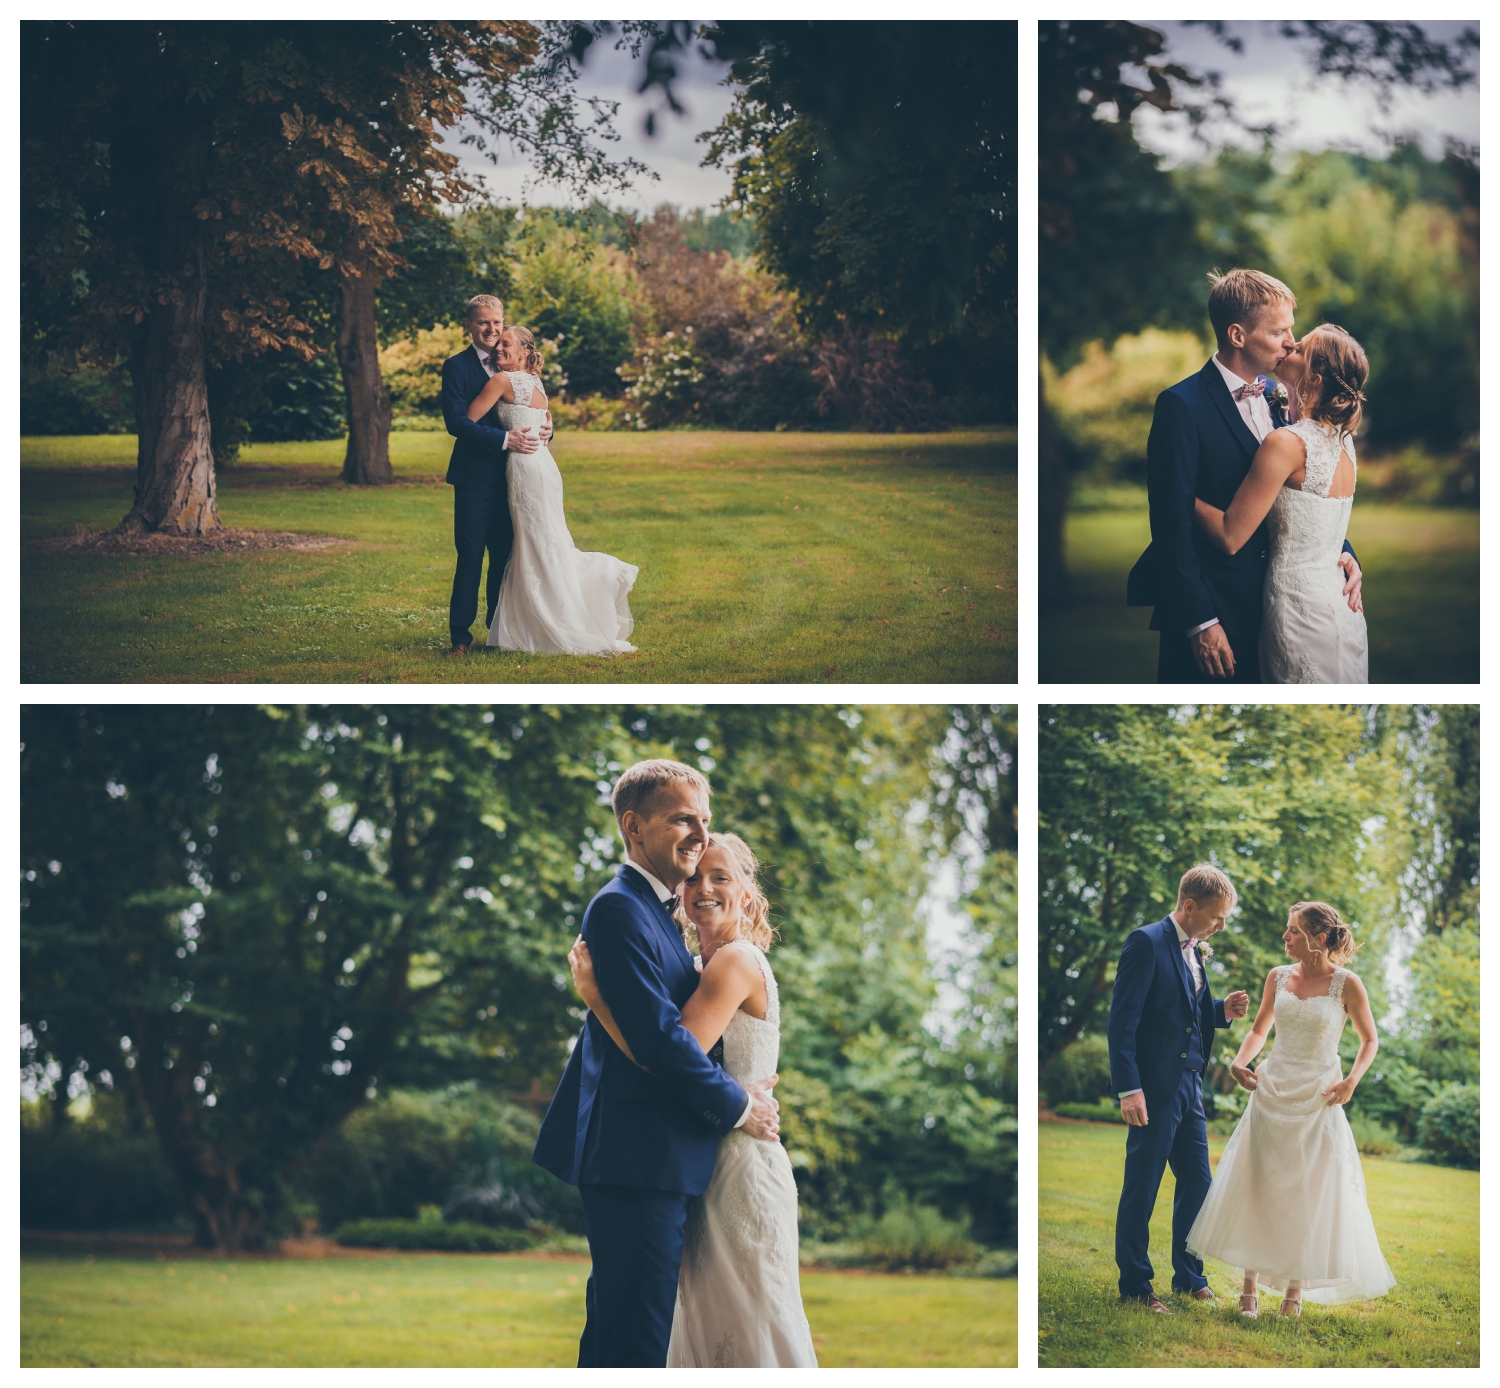 Huwelijksfotograaf, huwelijksfotografie, trouw, bruiloft